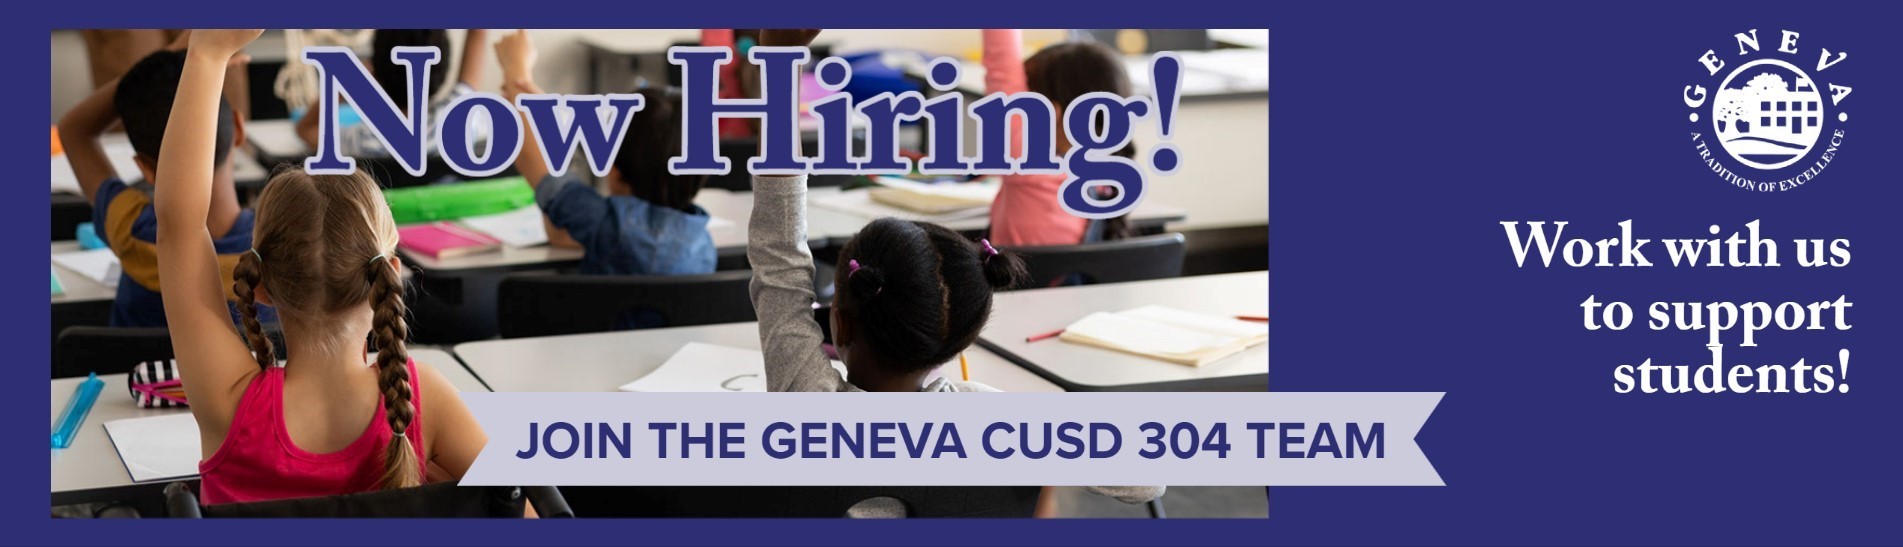 Geneva school district is now hiring